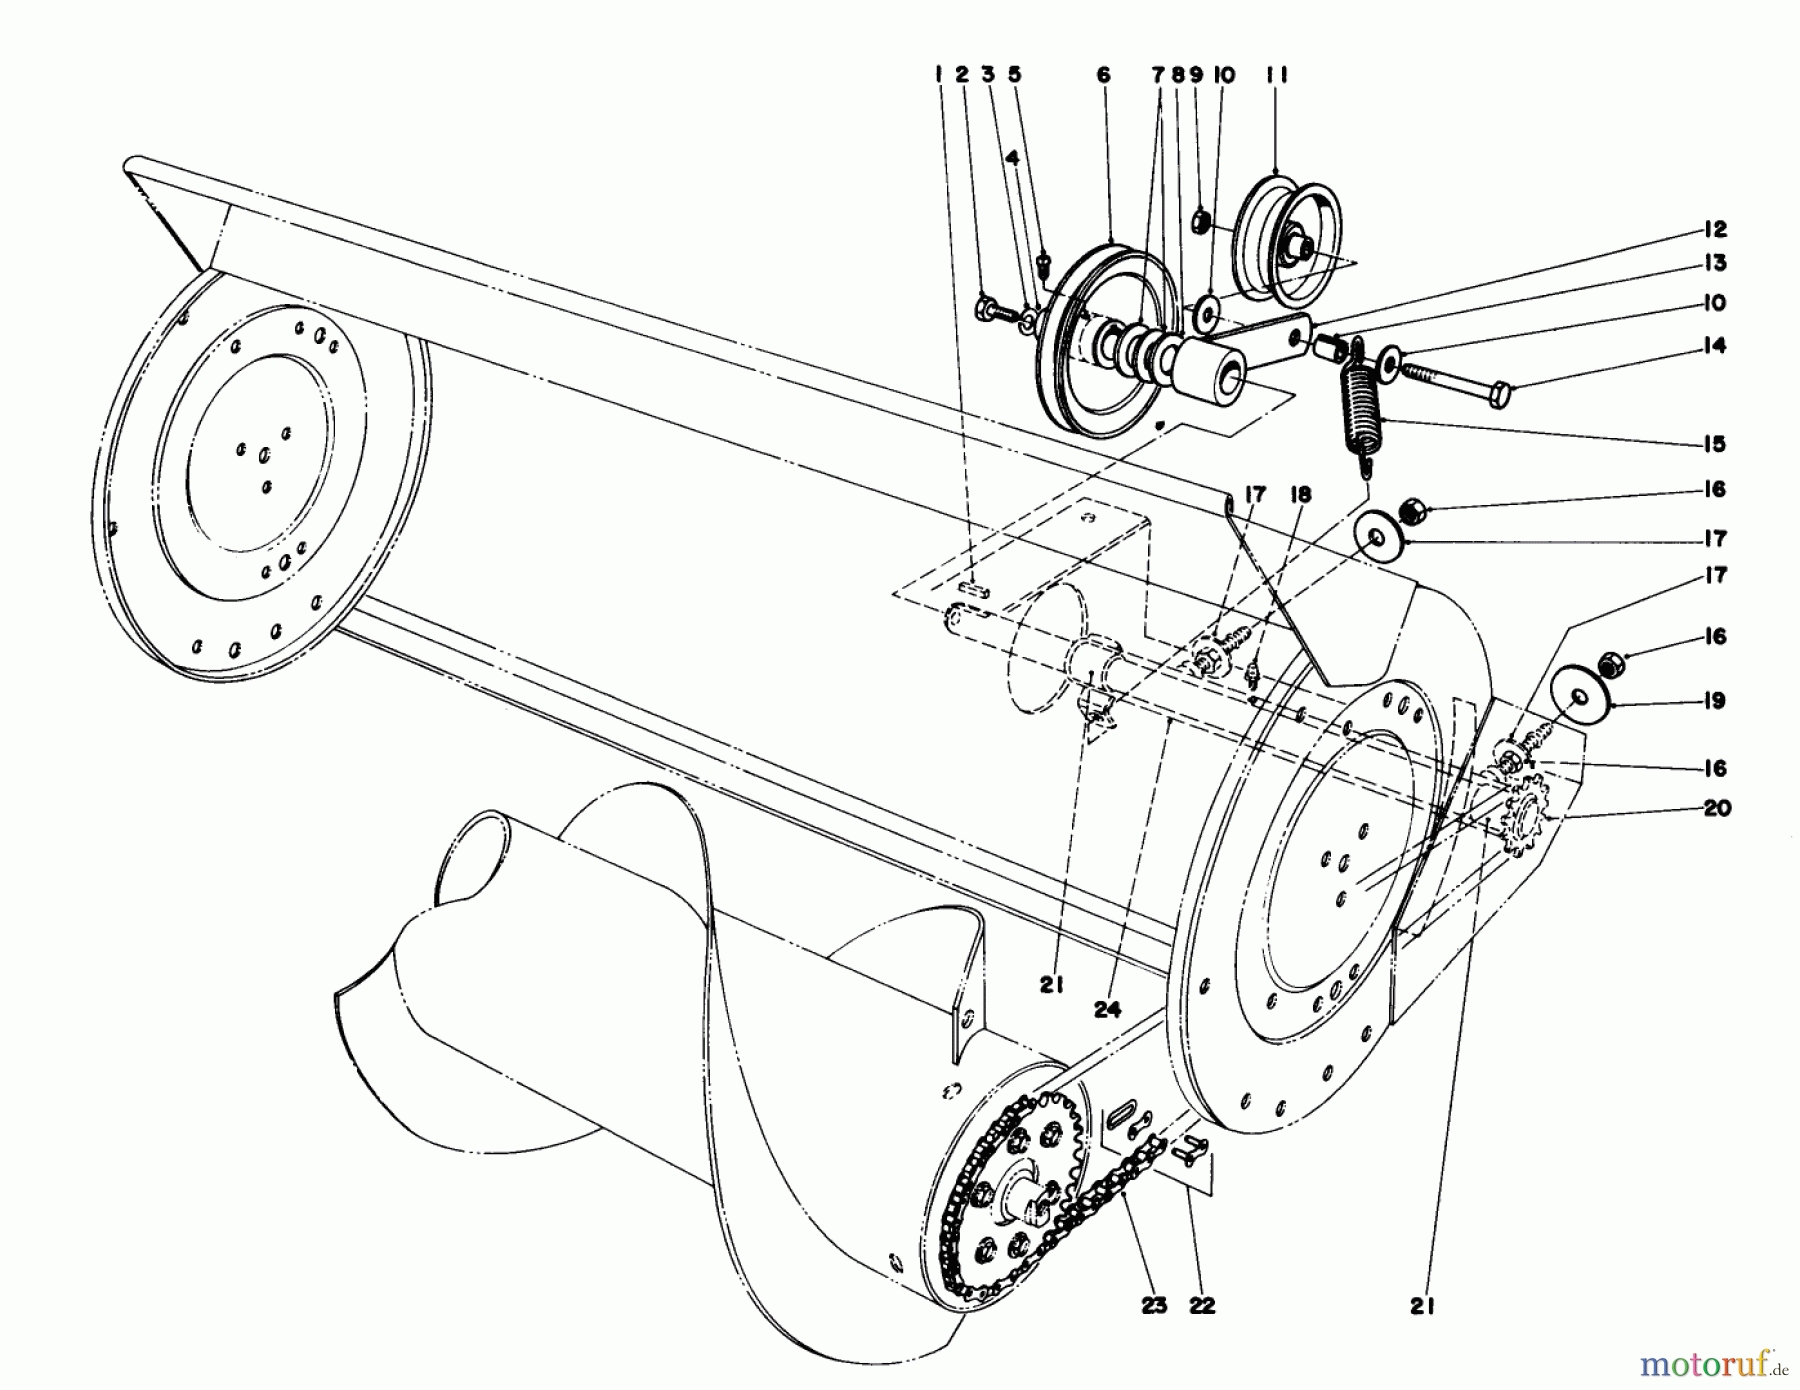  Toro Neu Mowers, Lawn & Garden Tractor Seite 1 57300 (8-32) - Toro 8-32 Front Engine Rider, 1981 (1000001-1999999) 36